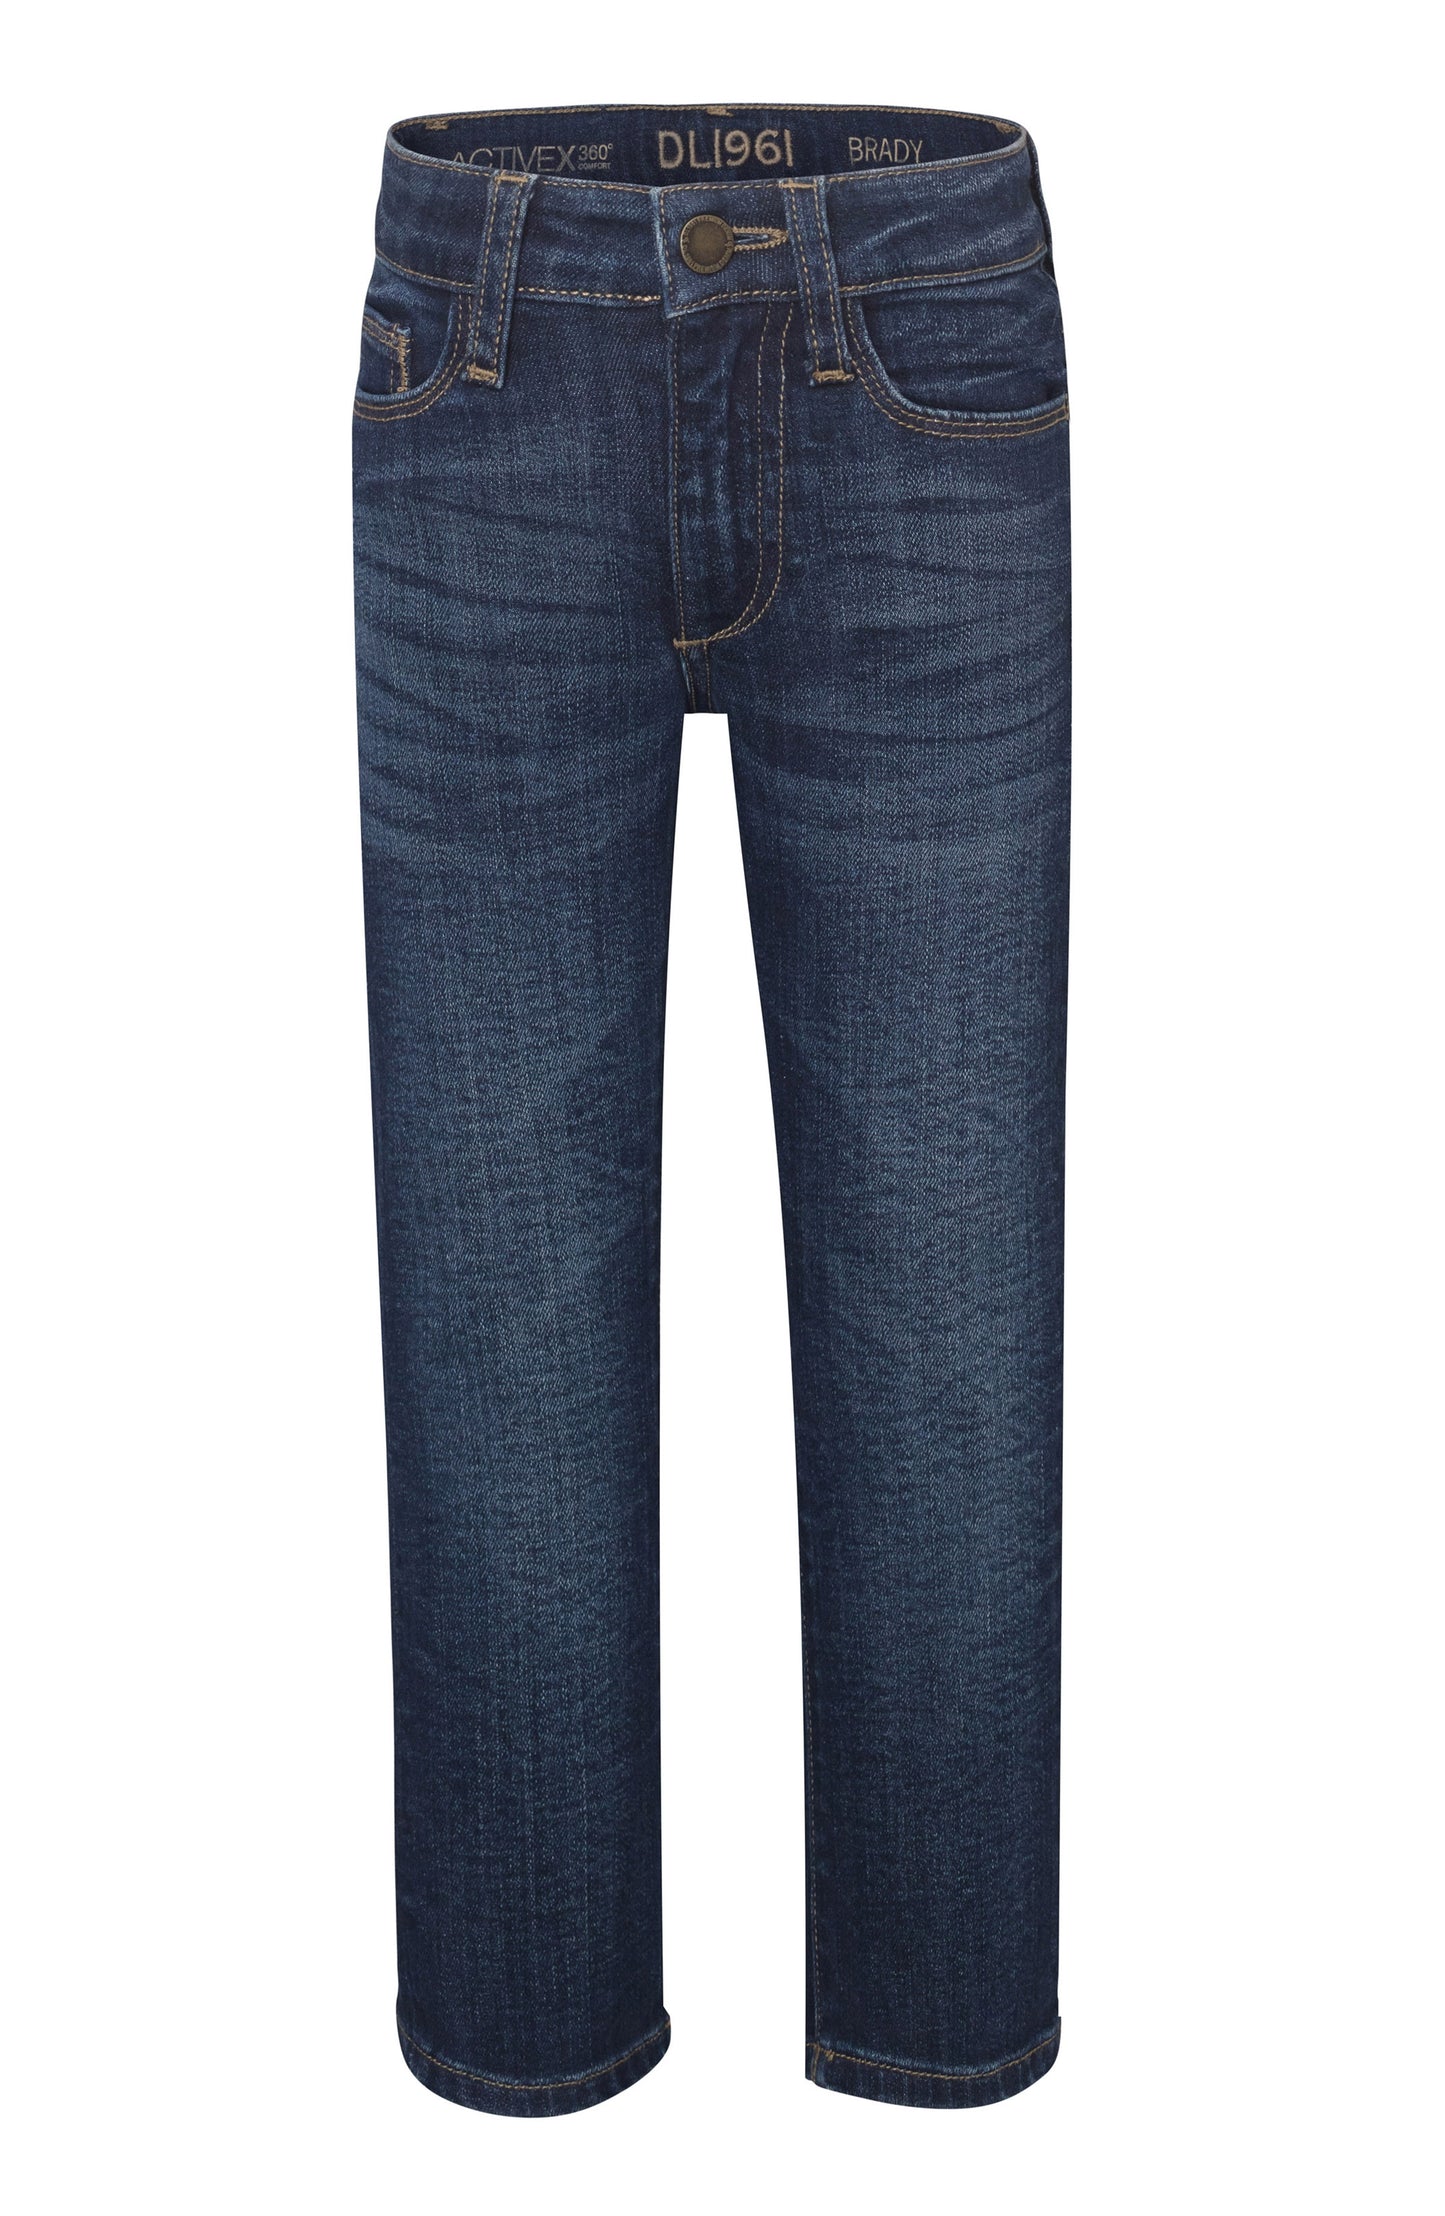 DL1961 Brady Slim Fit Jeans